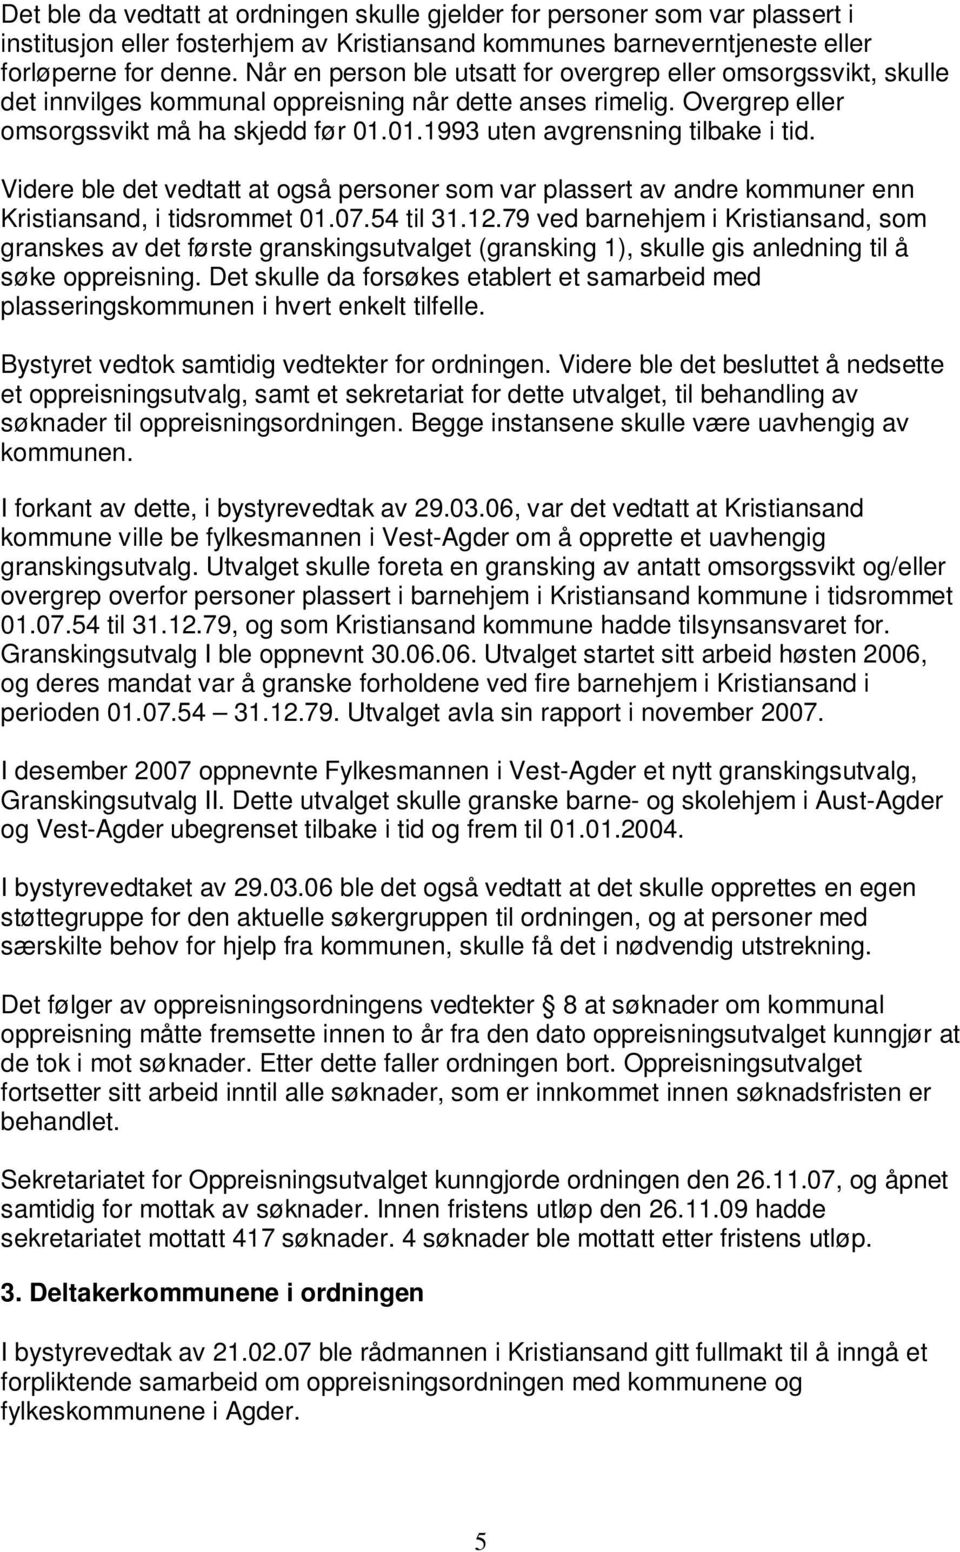 01.1993 uten avgrensning tilbake i tid. Videre ble det vedtatt at også personer som var plassert av andre kommuner enn Kristiansand, i tidsrommet 01.07.54 til 31.12.